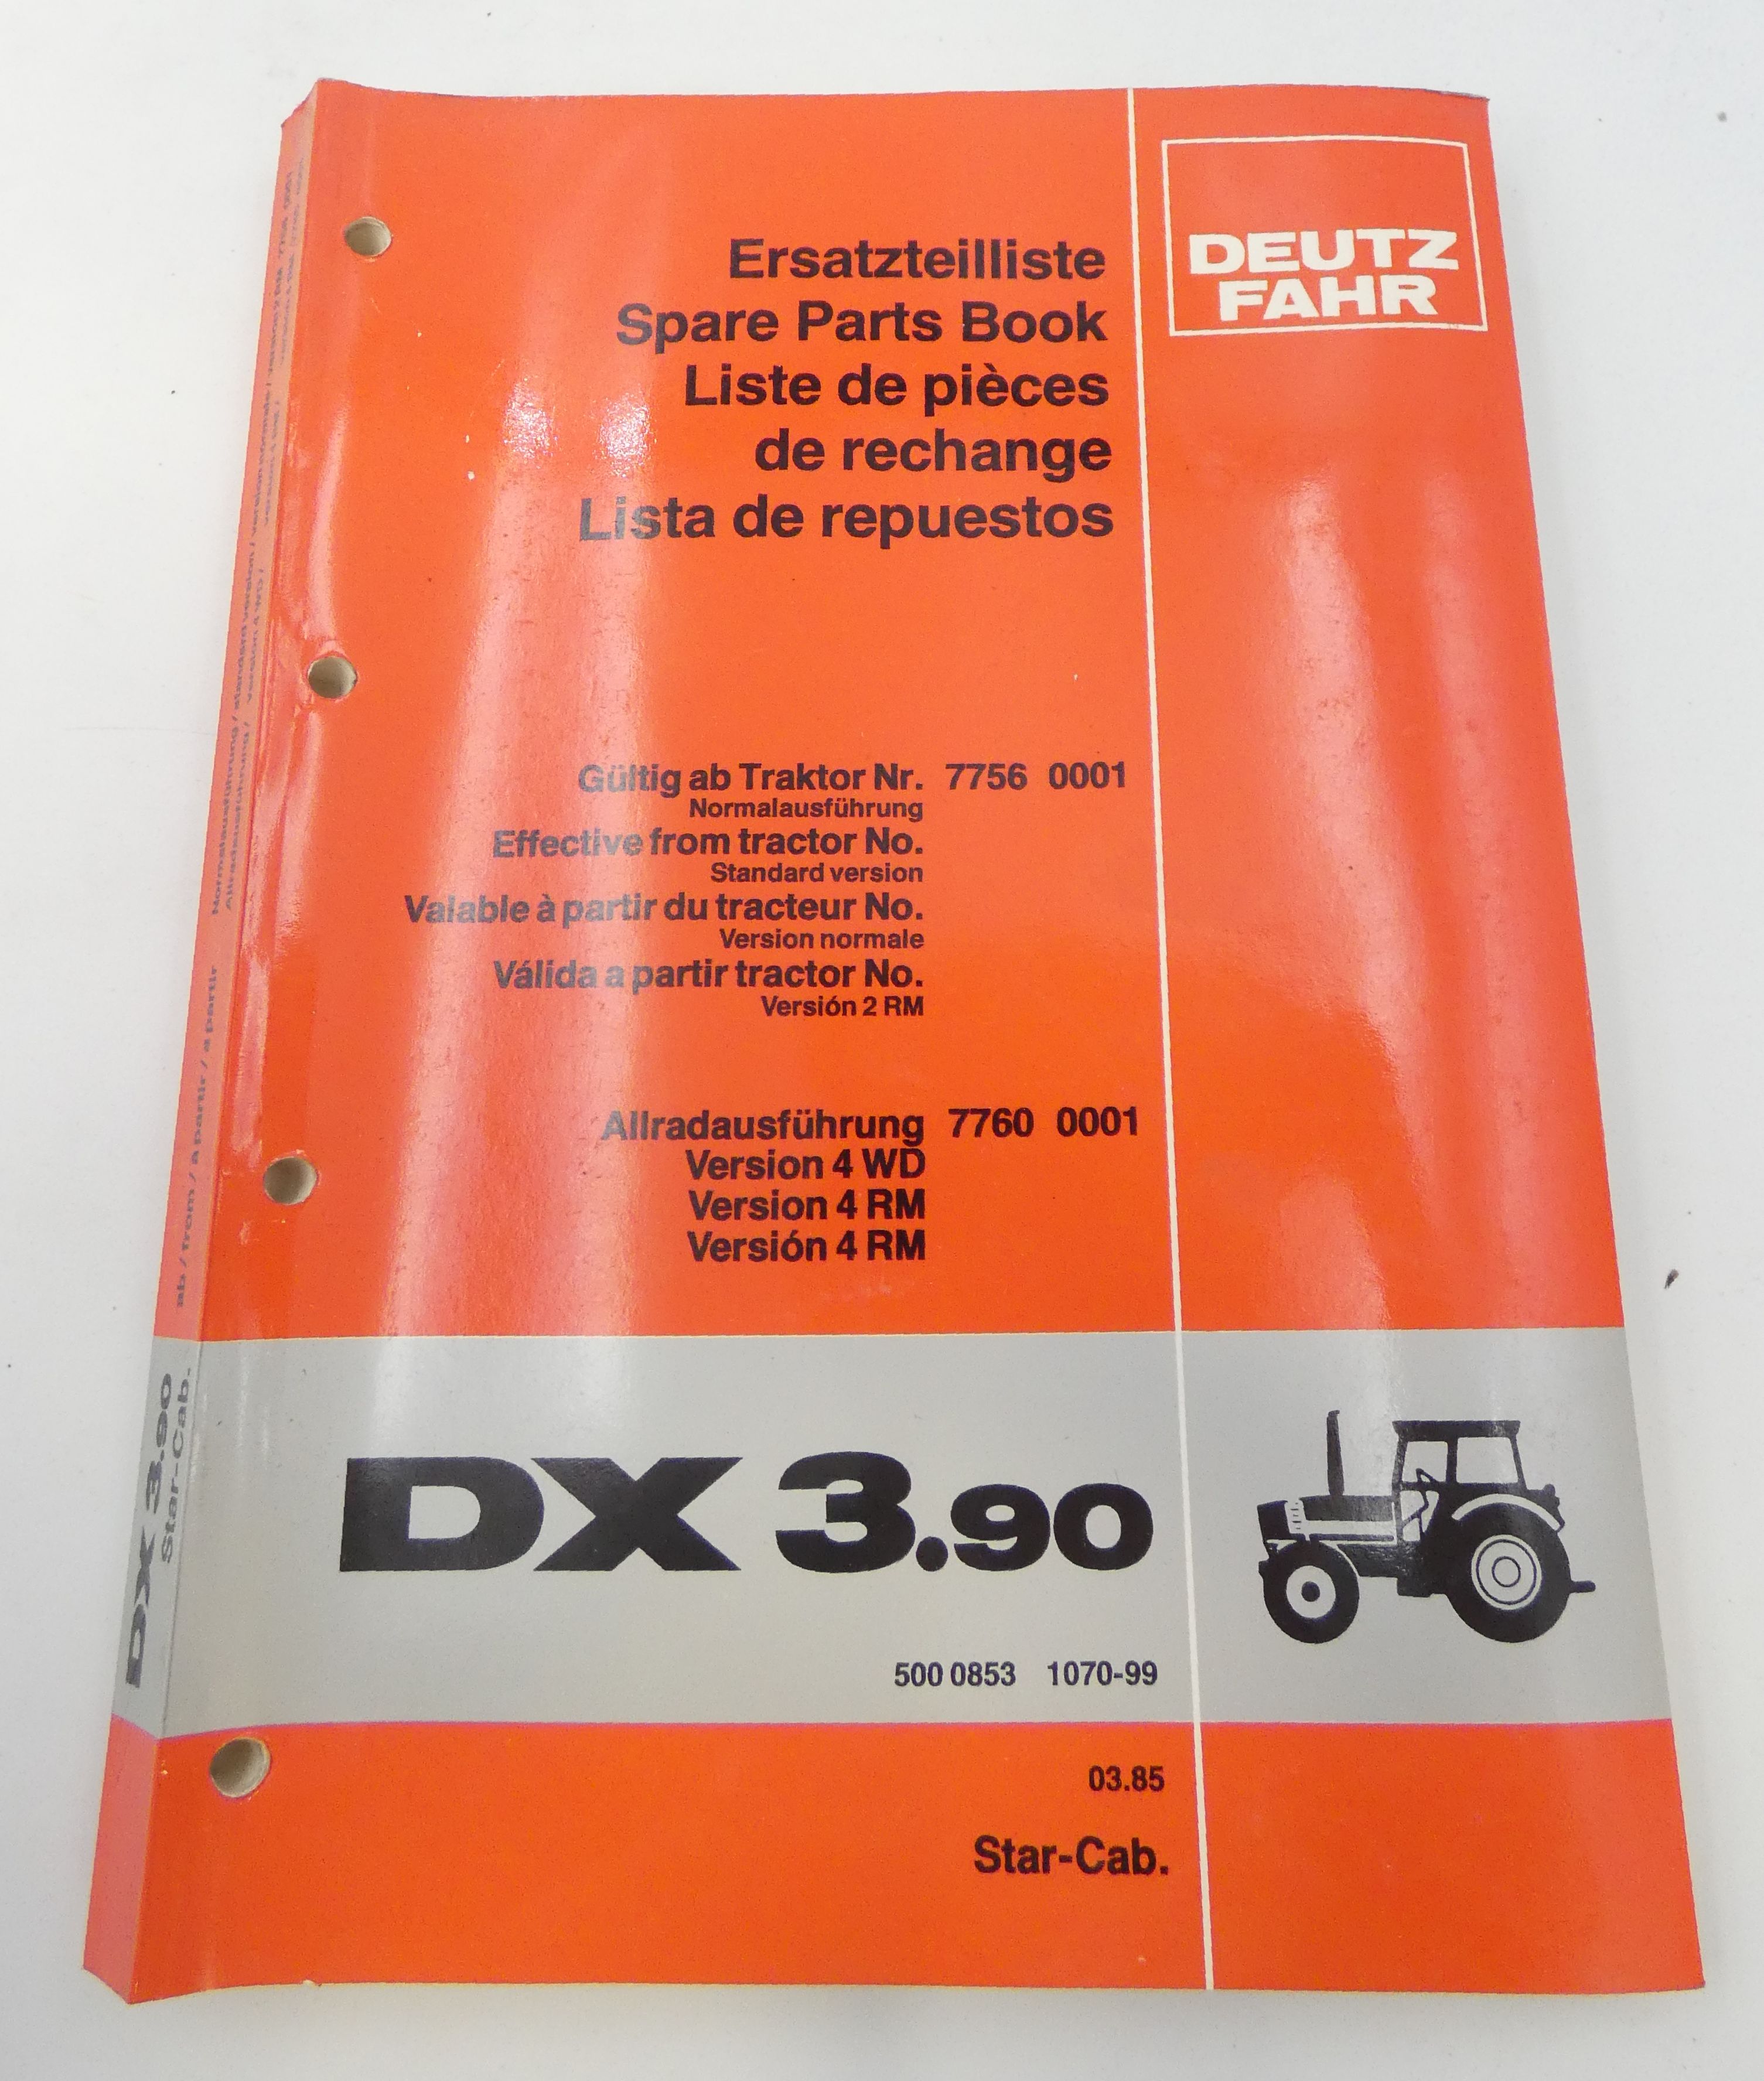 Deutz-Fahr DX3.90 spare parts book